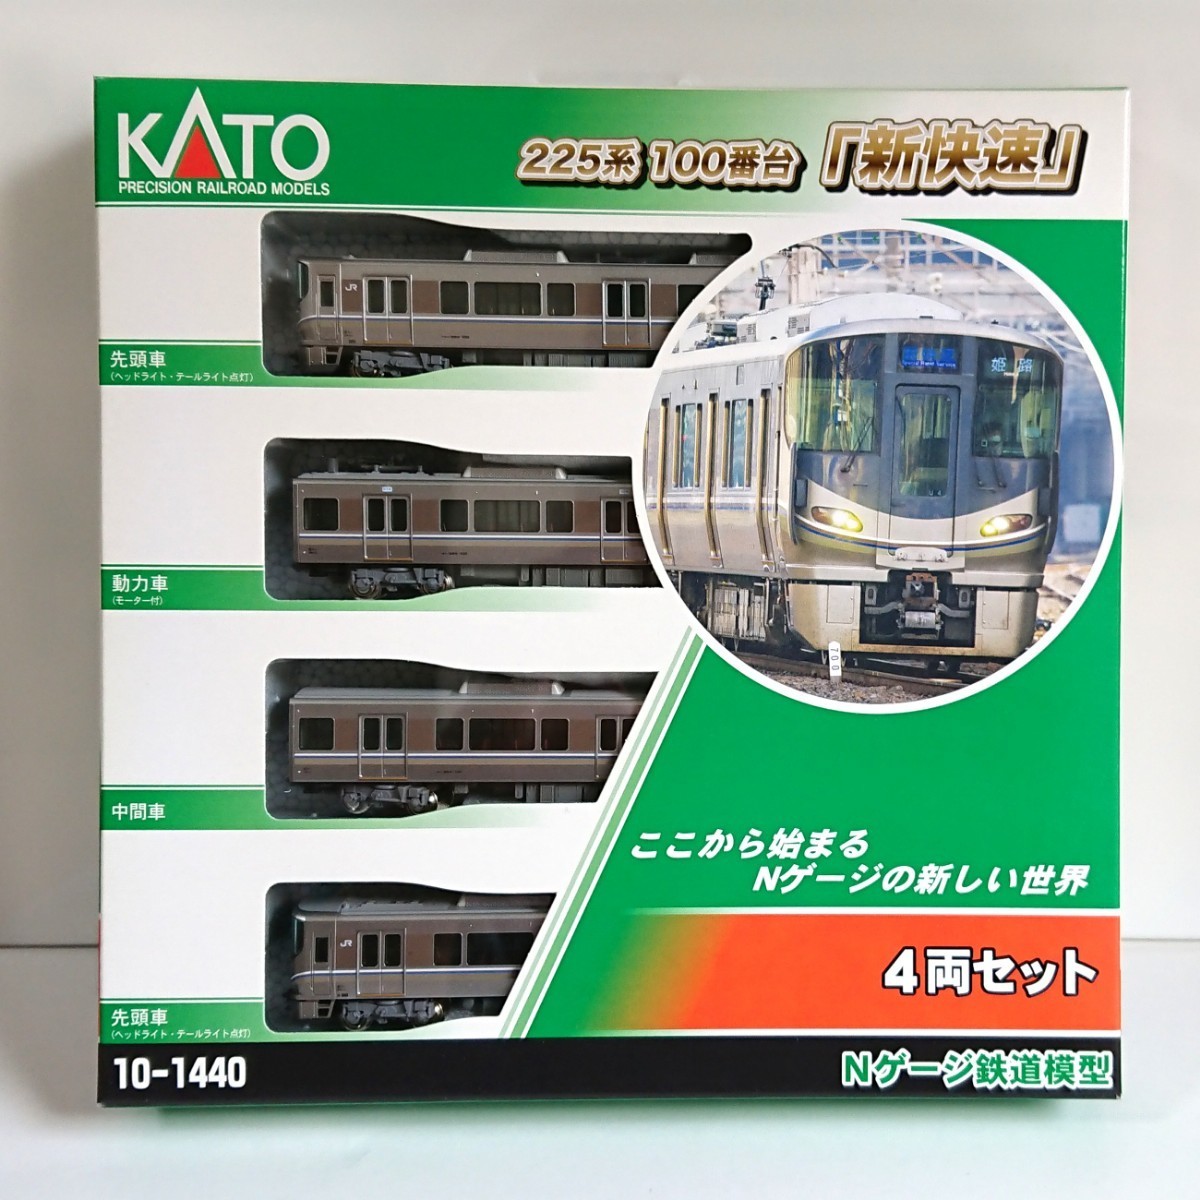 KATO カトー 10-1440 225系100番台《新快速》4両セット